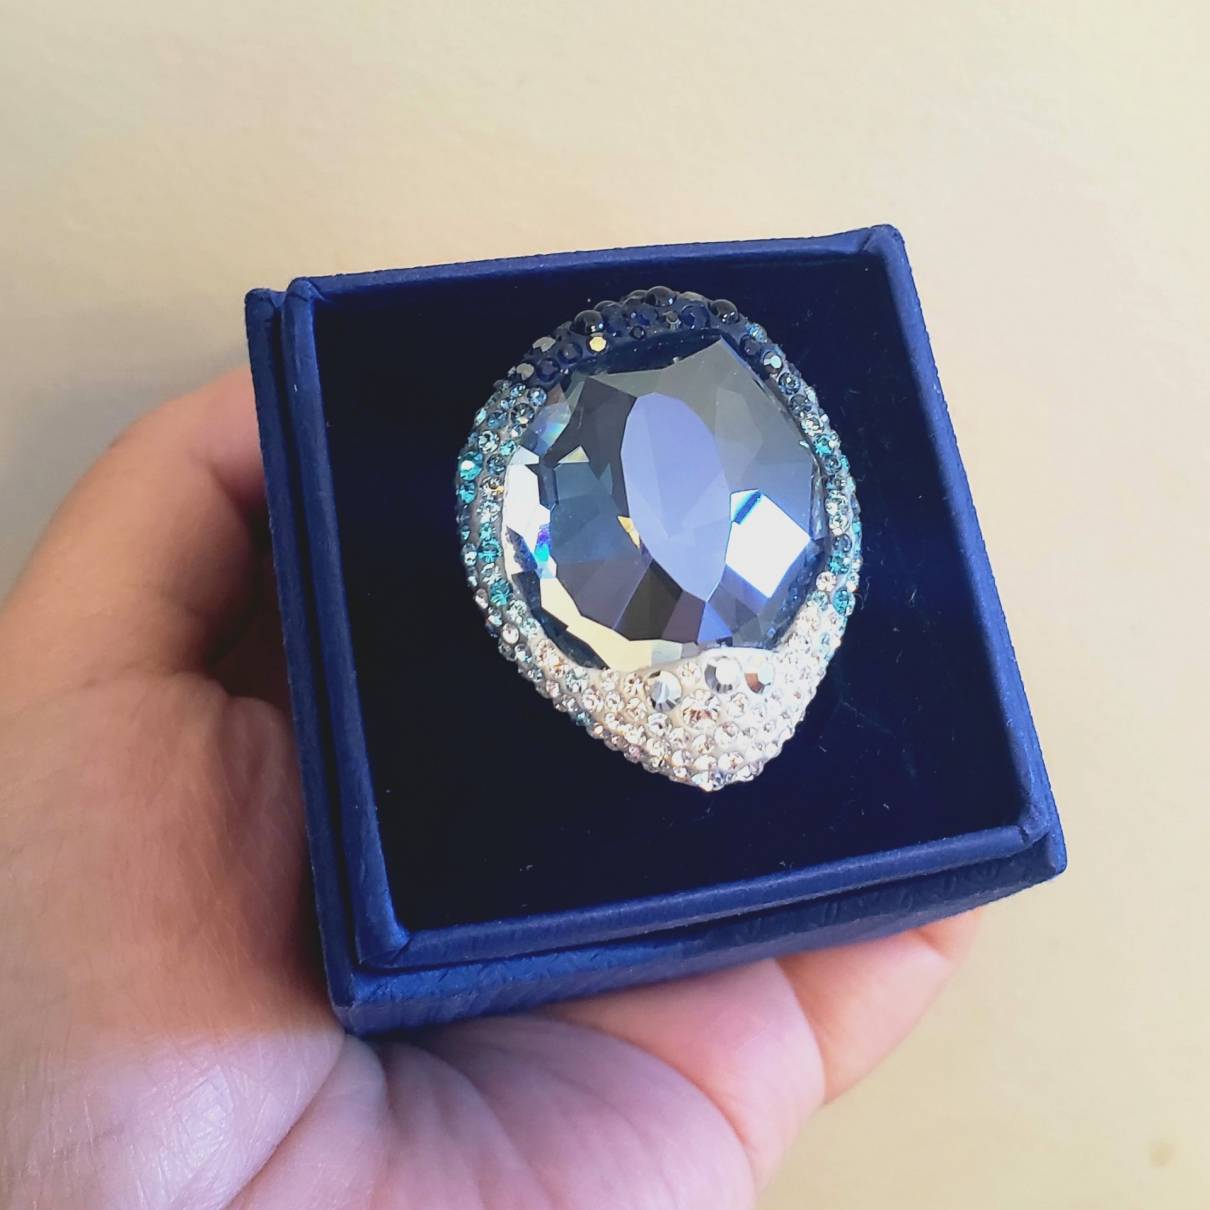 Duwen Verplaatsbaar Prestige Crystal ring Swarovski Blue size 8 US in Crystal - 21148019